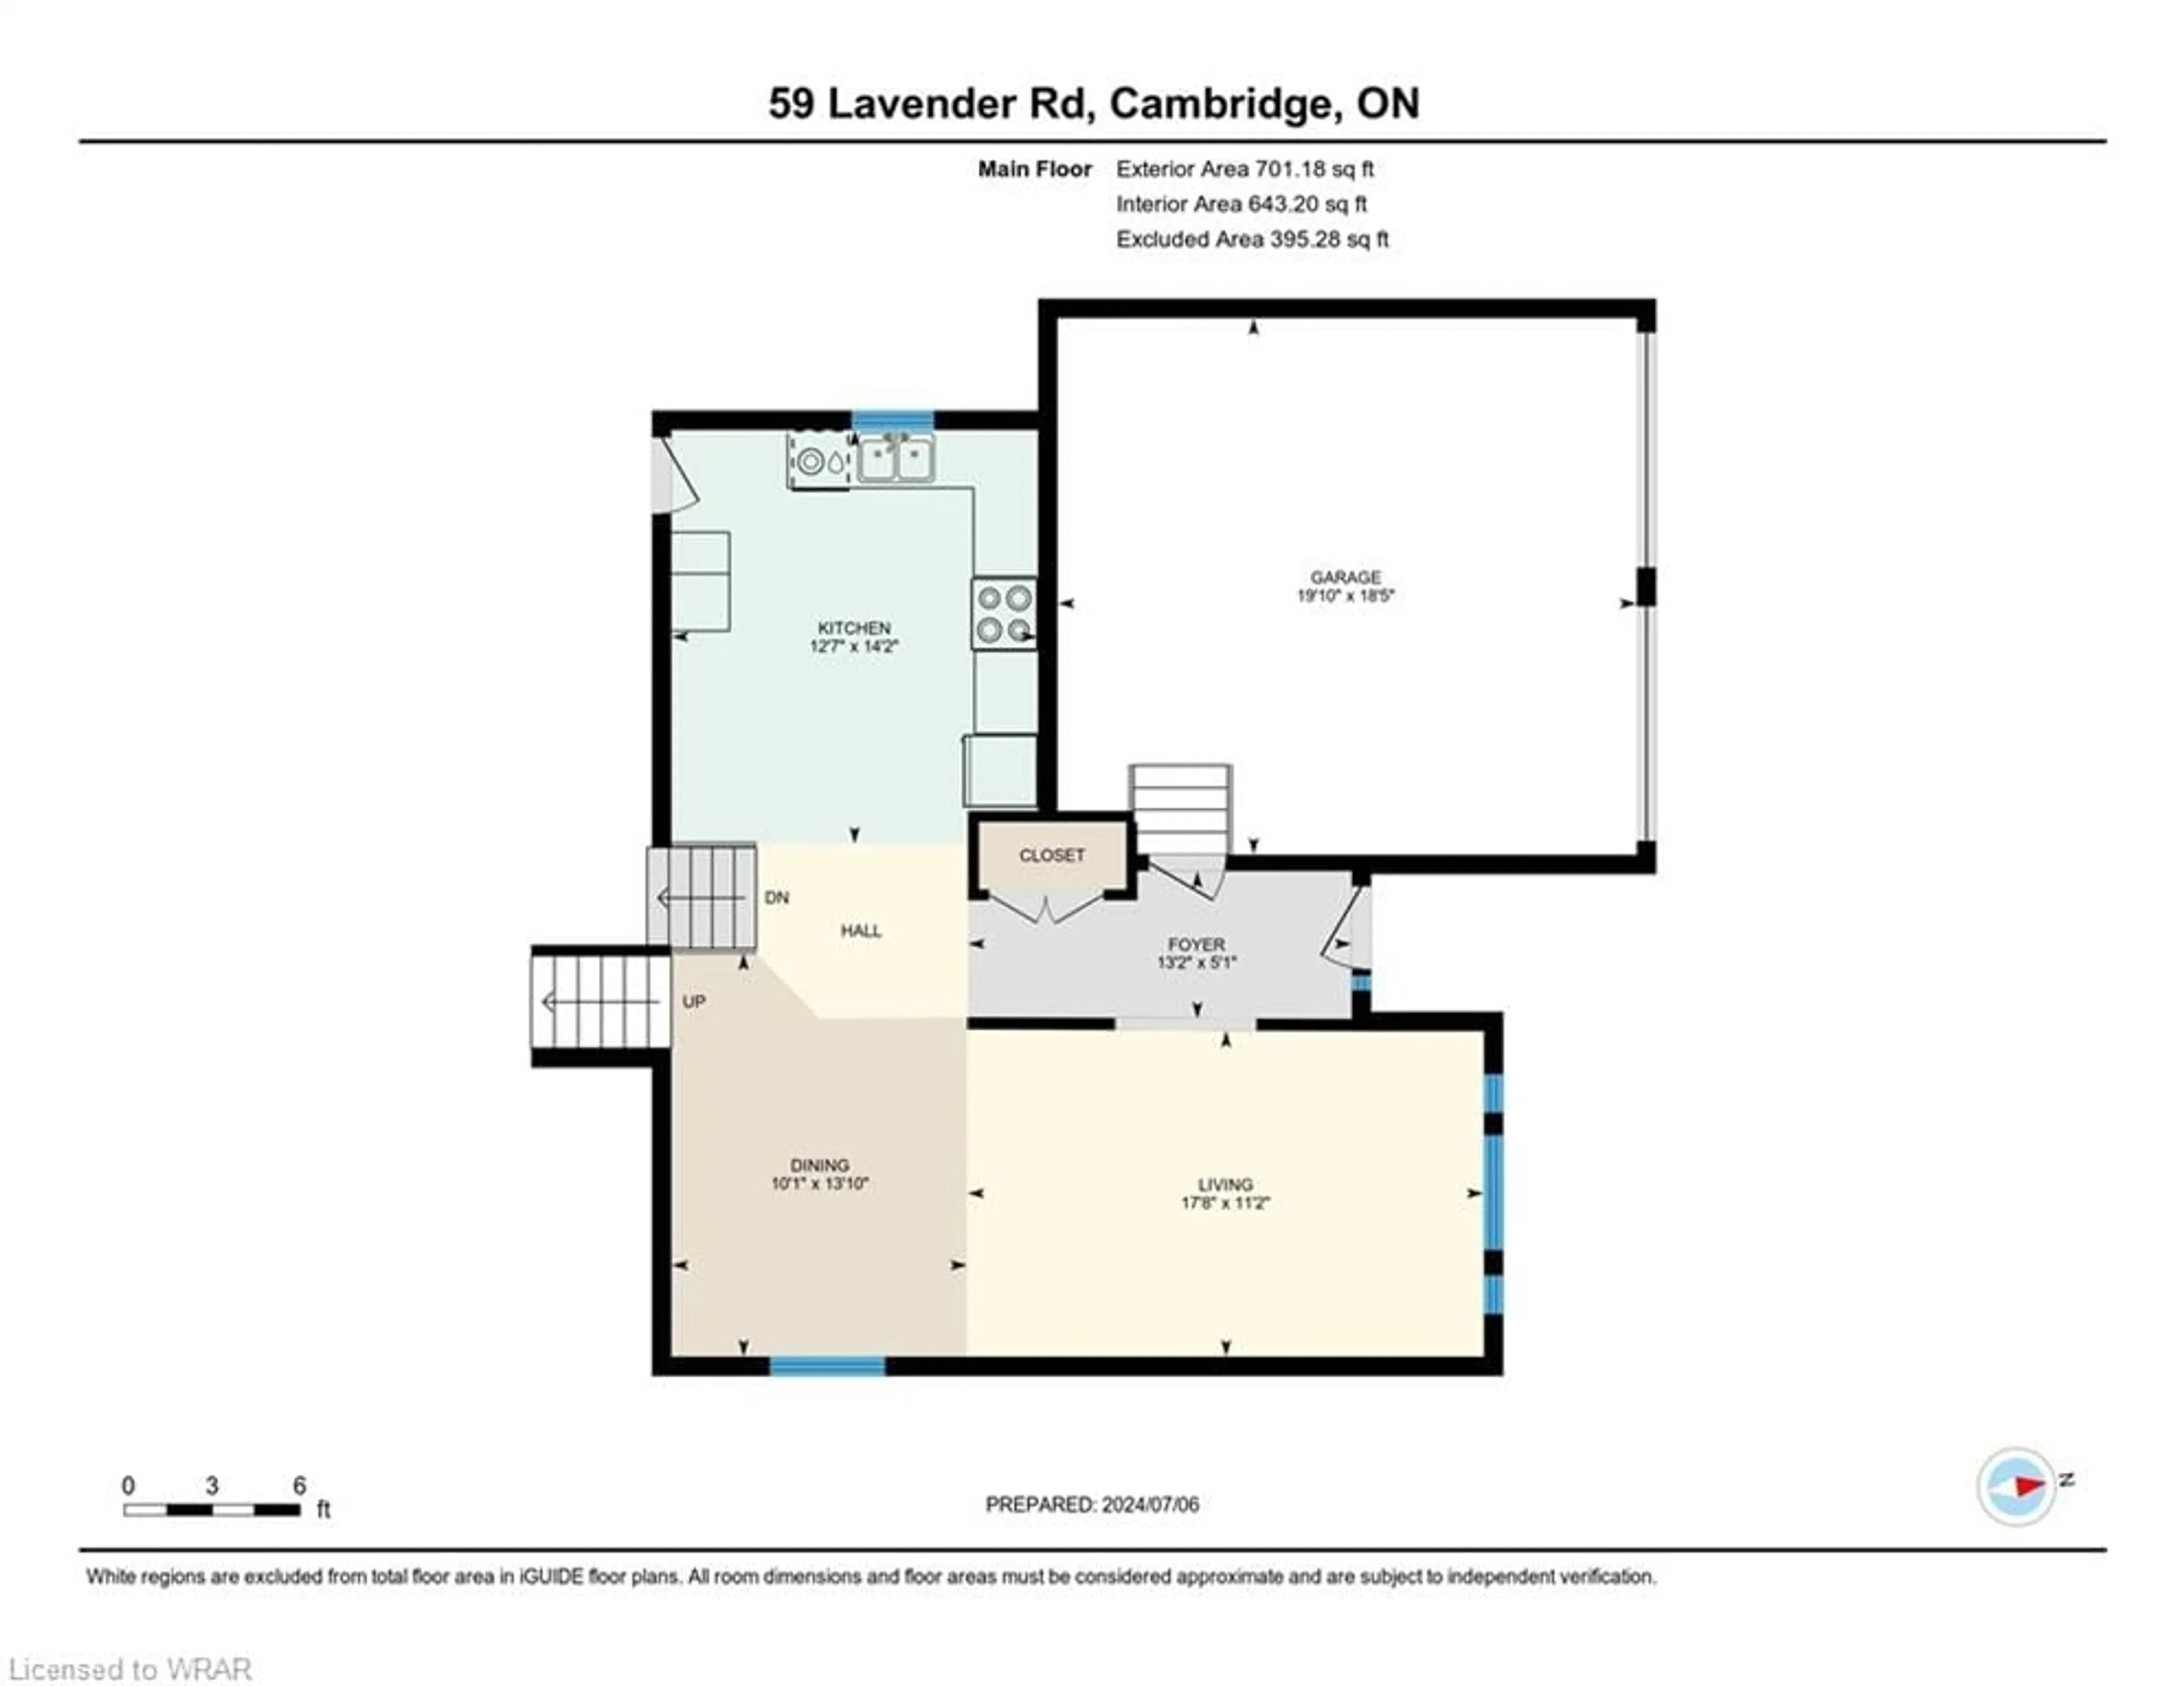 Floor plan for 59 Lavender Rd, Cambridge Ontario N1P 1E1